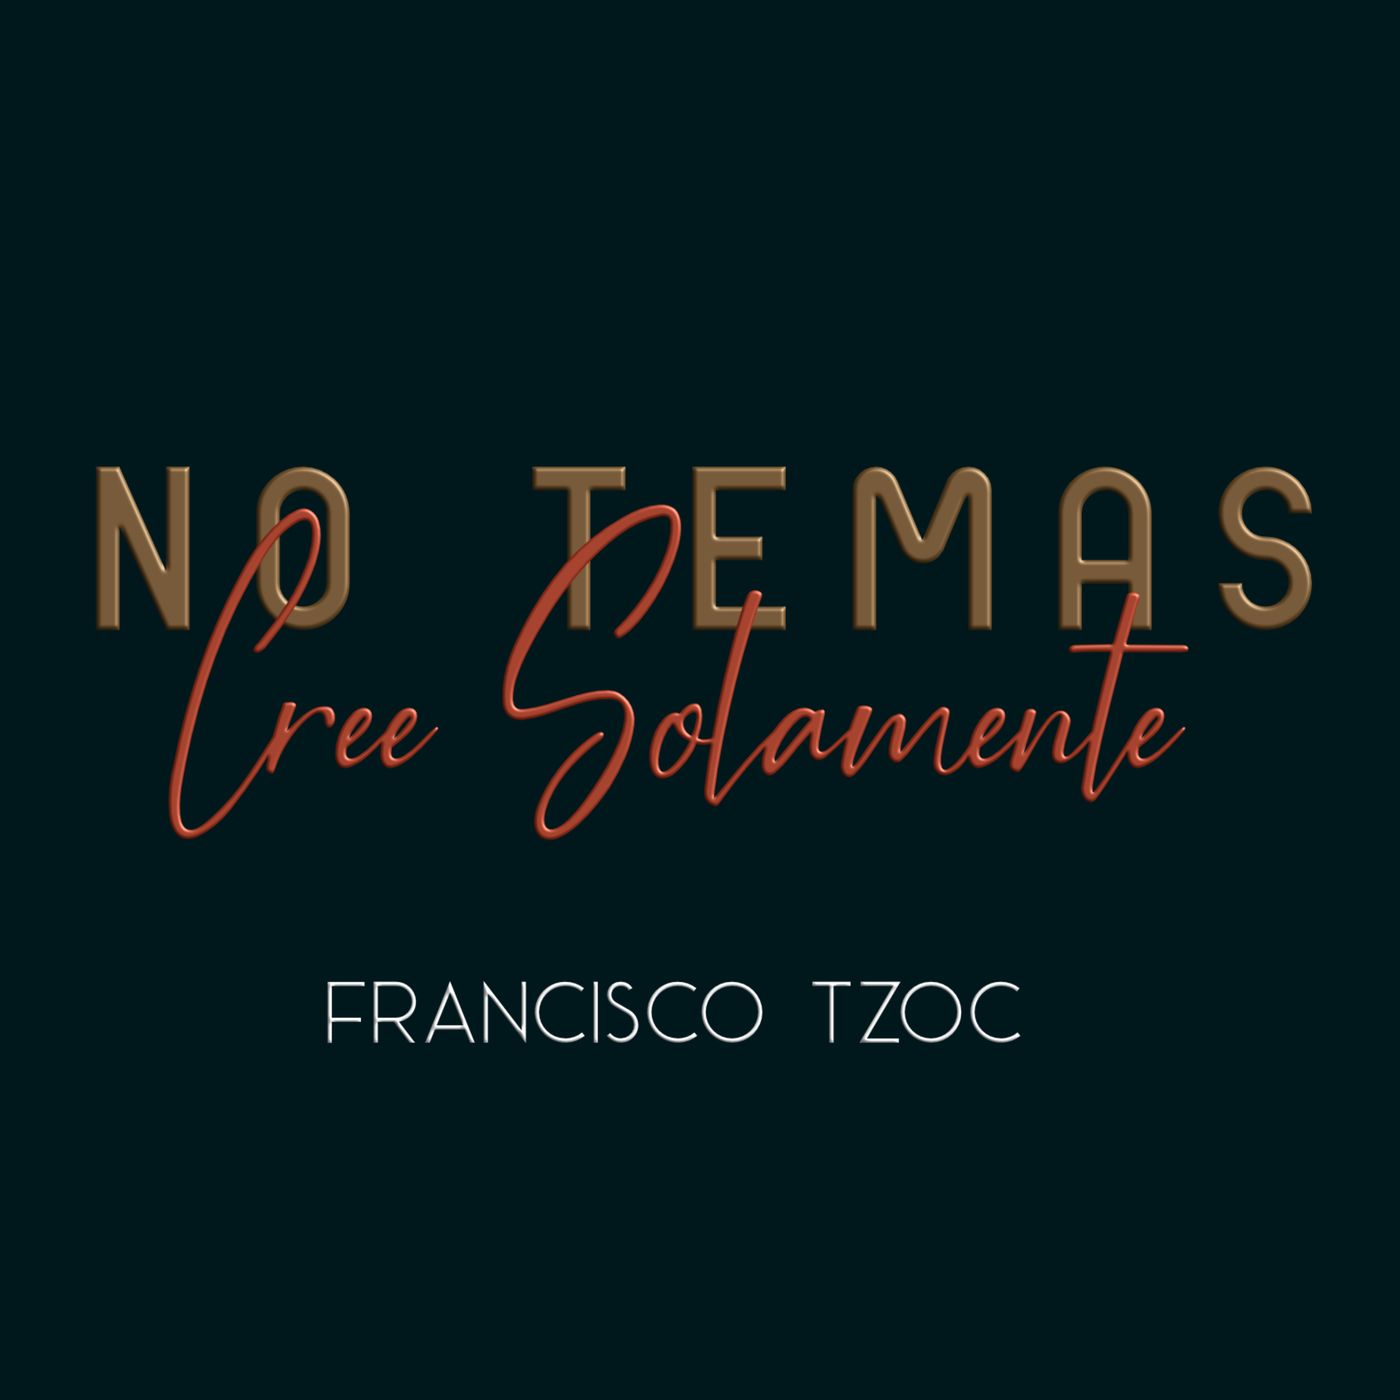 Francisco Tzoc - No temas, Cree solamente